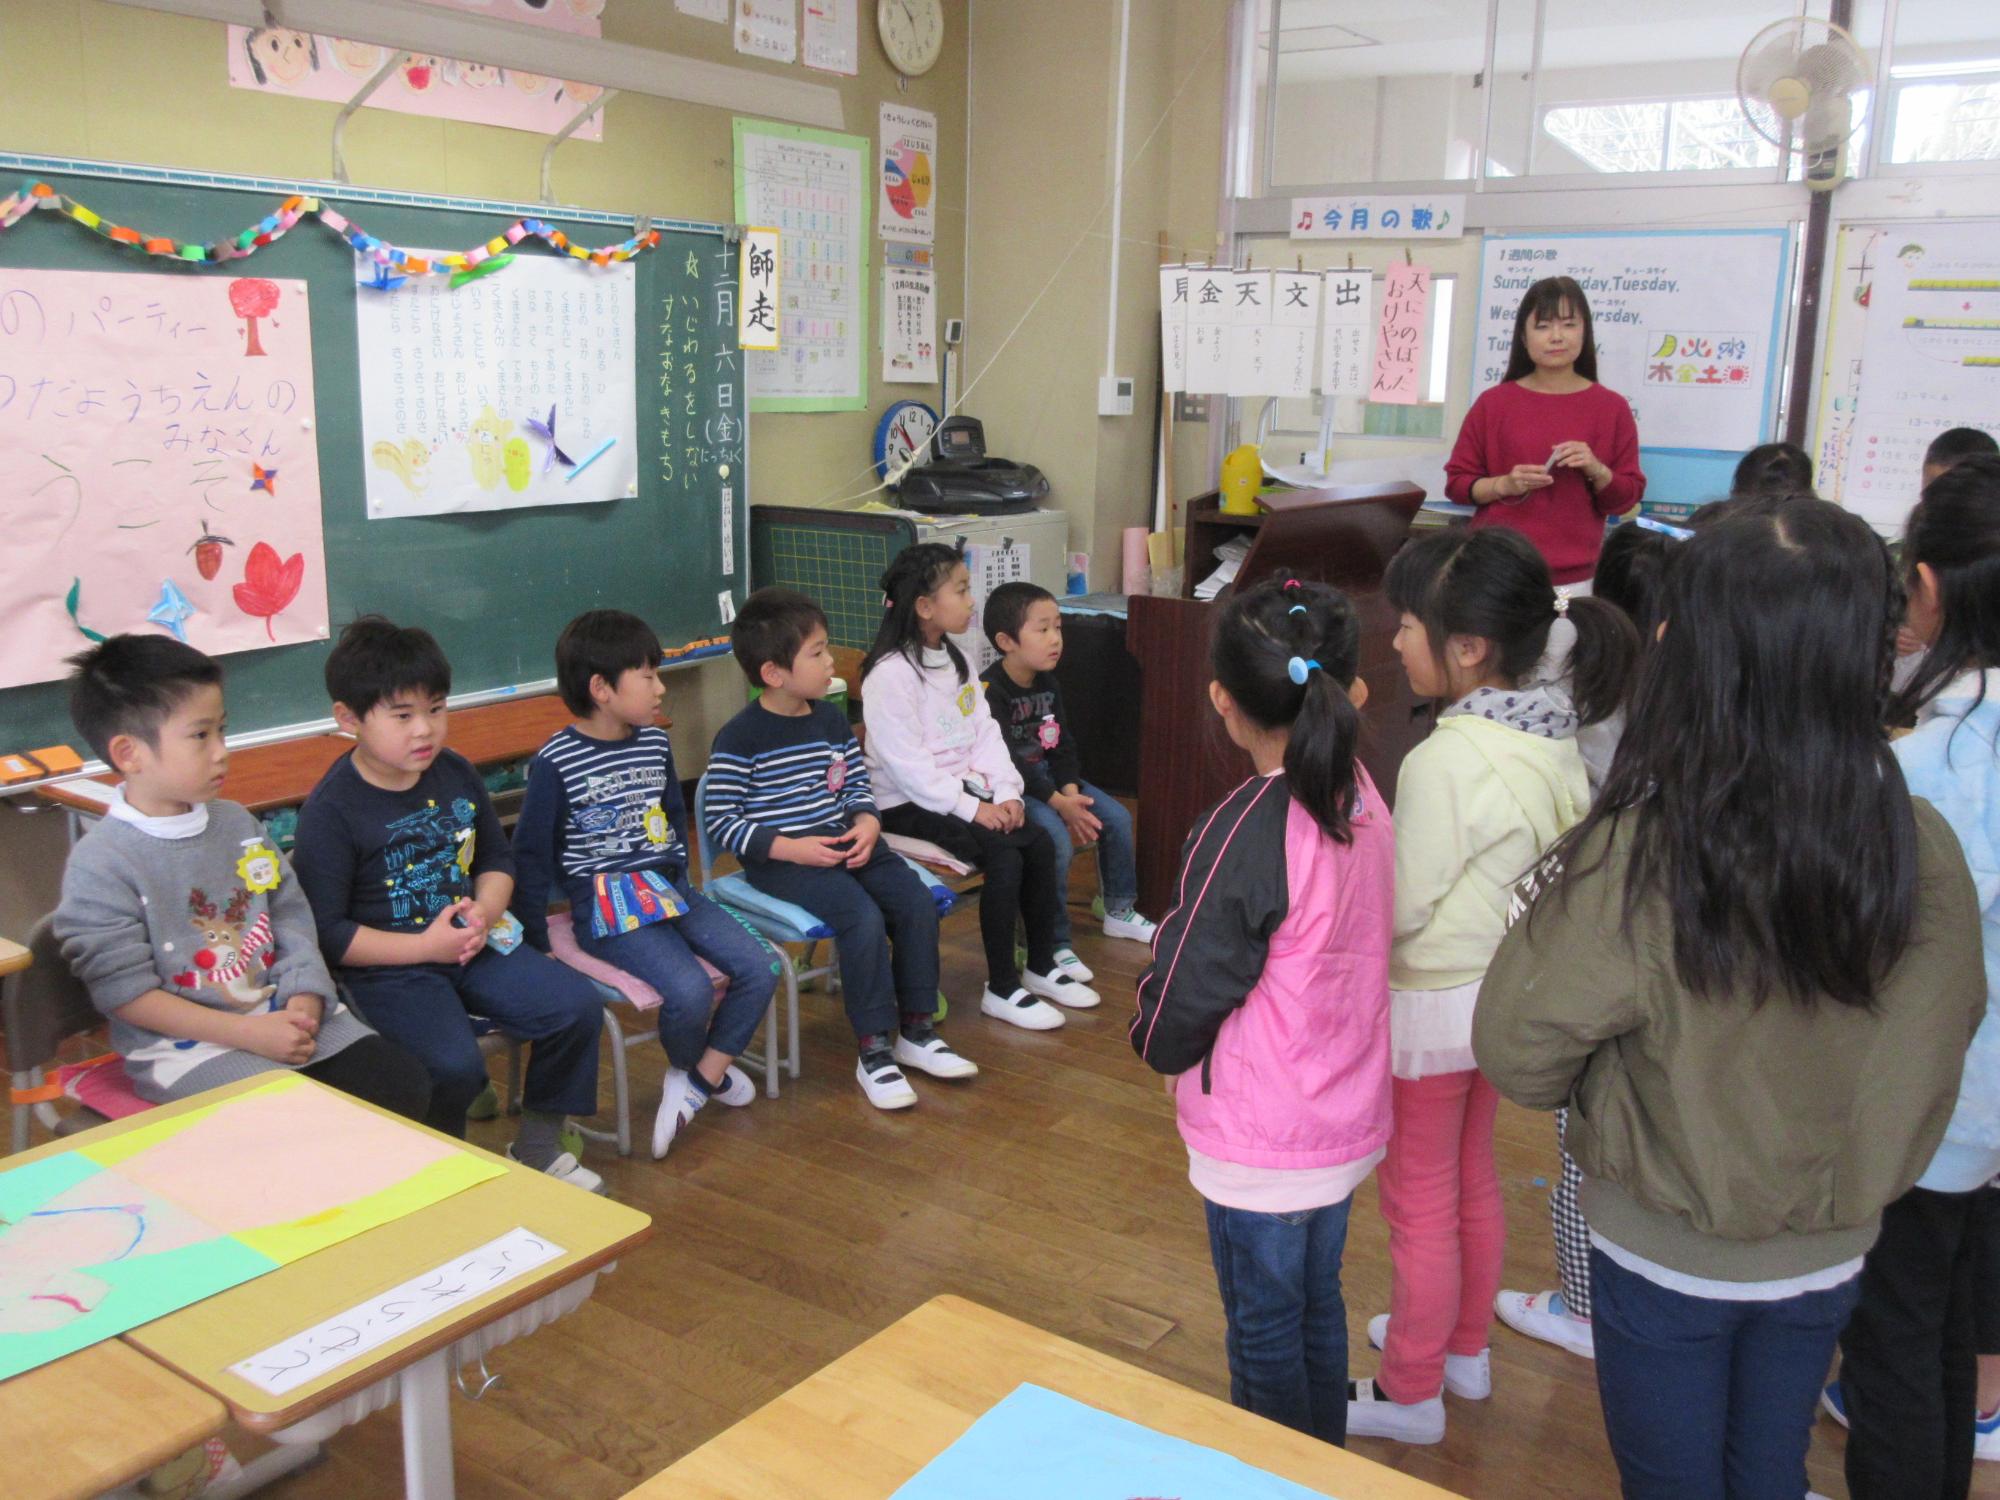 小学校の教室で、黒板の前に着席している園児と、向かい合って立っている小学生の児童の写真